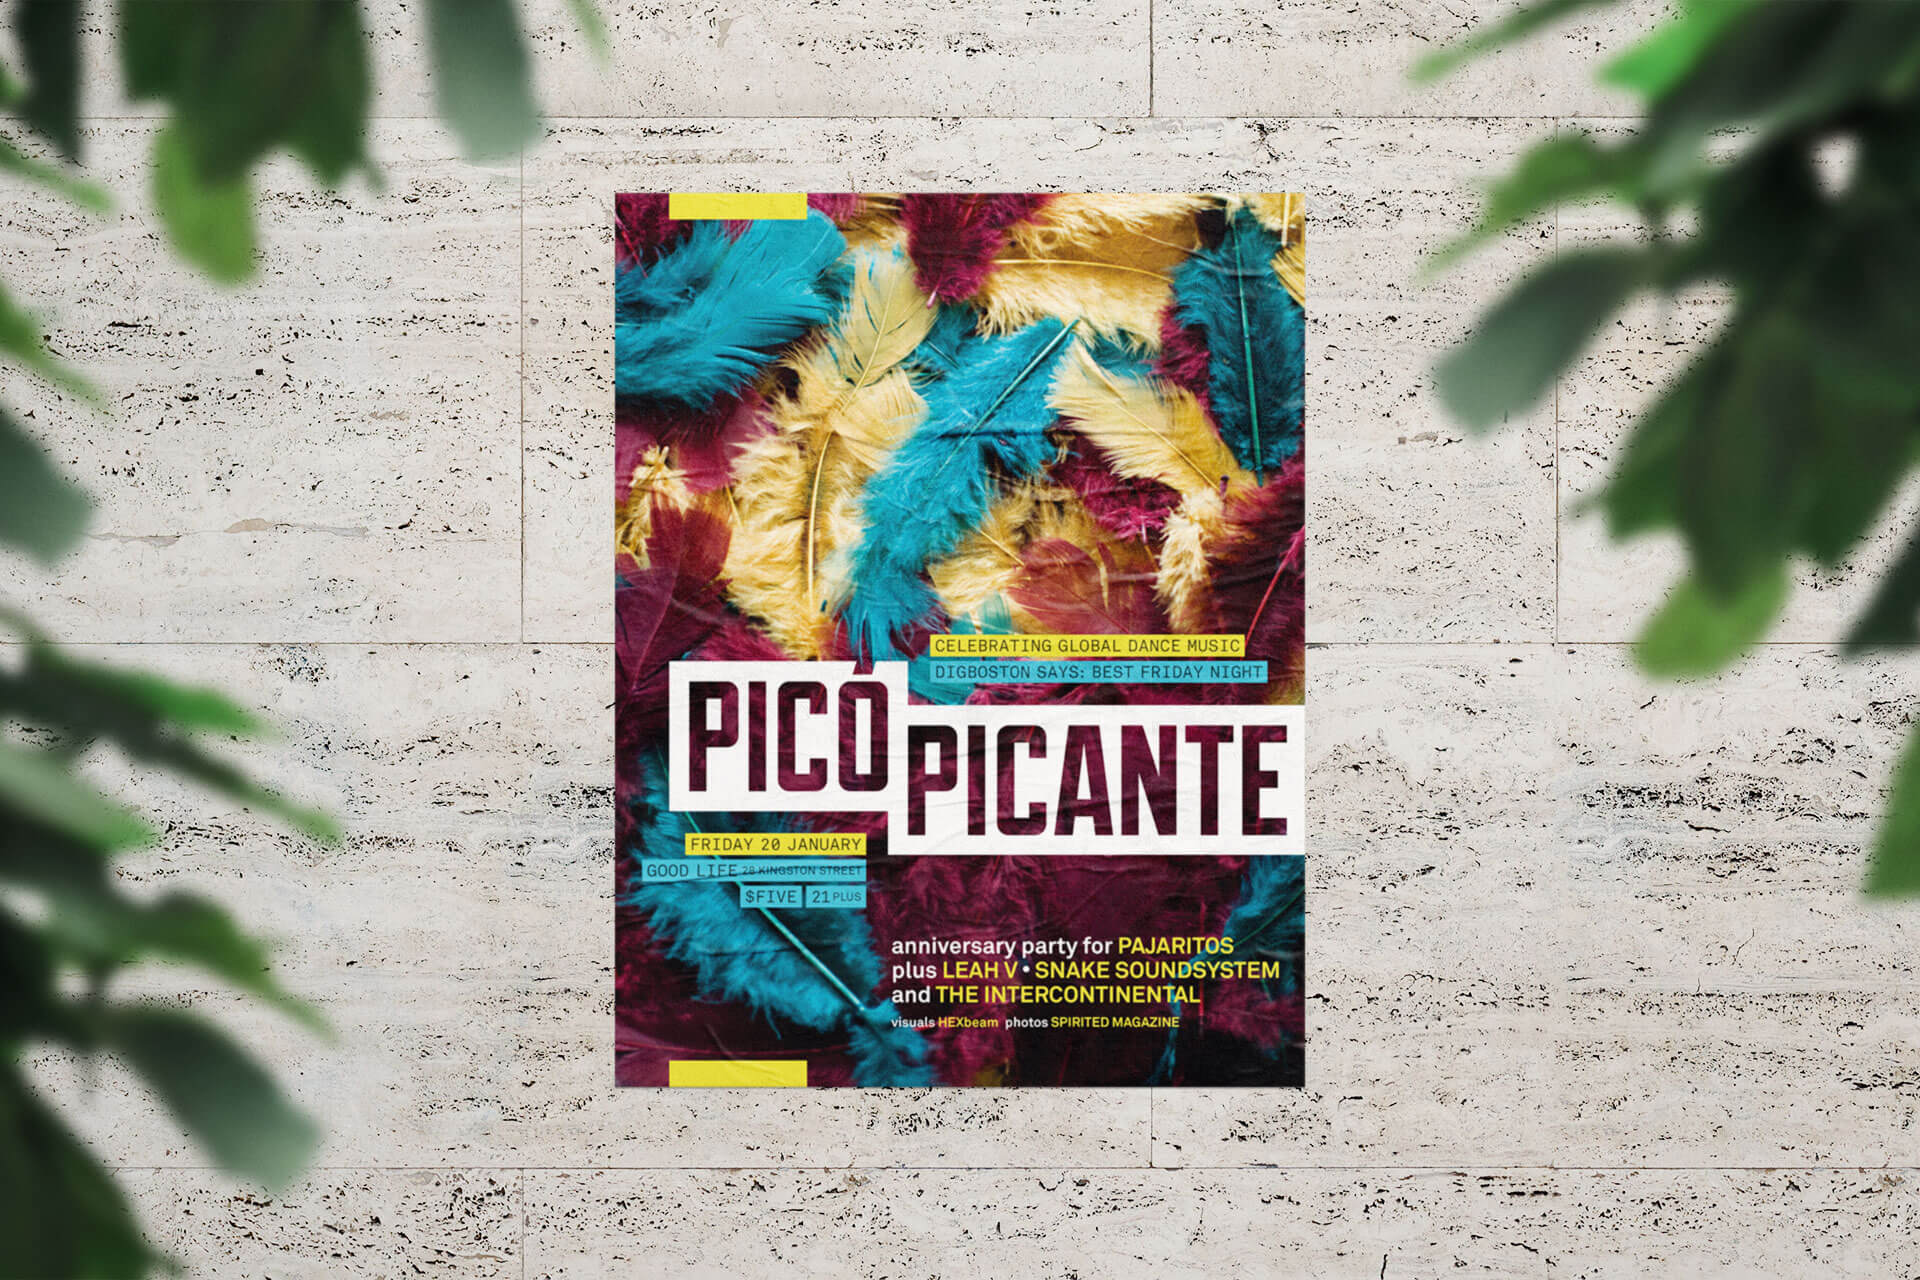 studio-malagon-pico-picante-poster-mockup-03